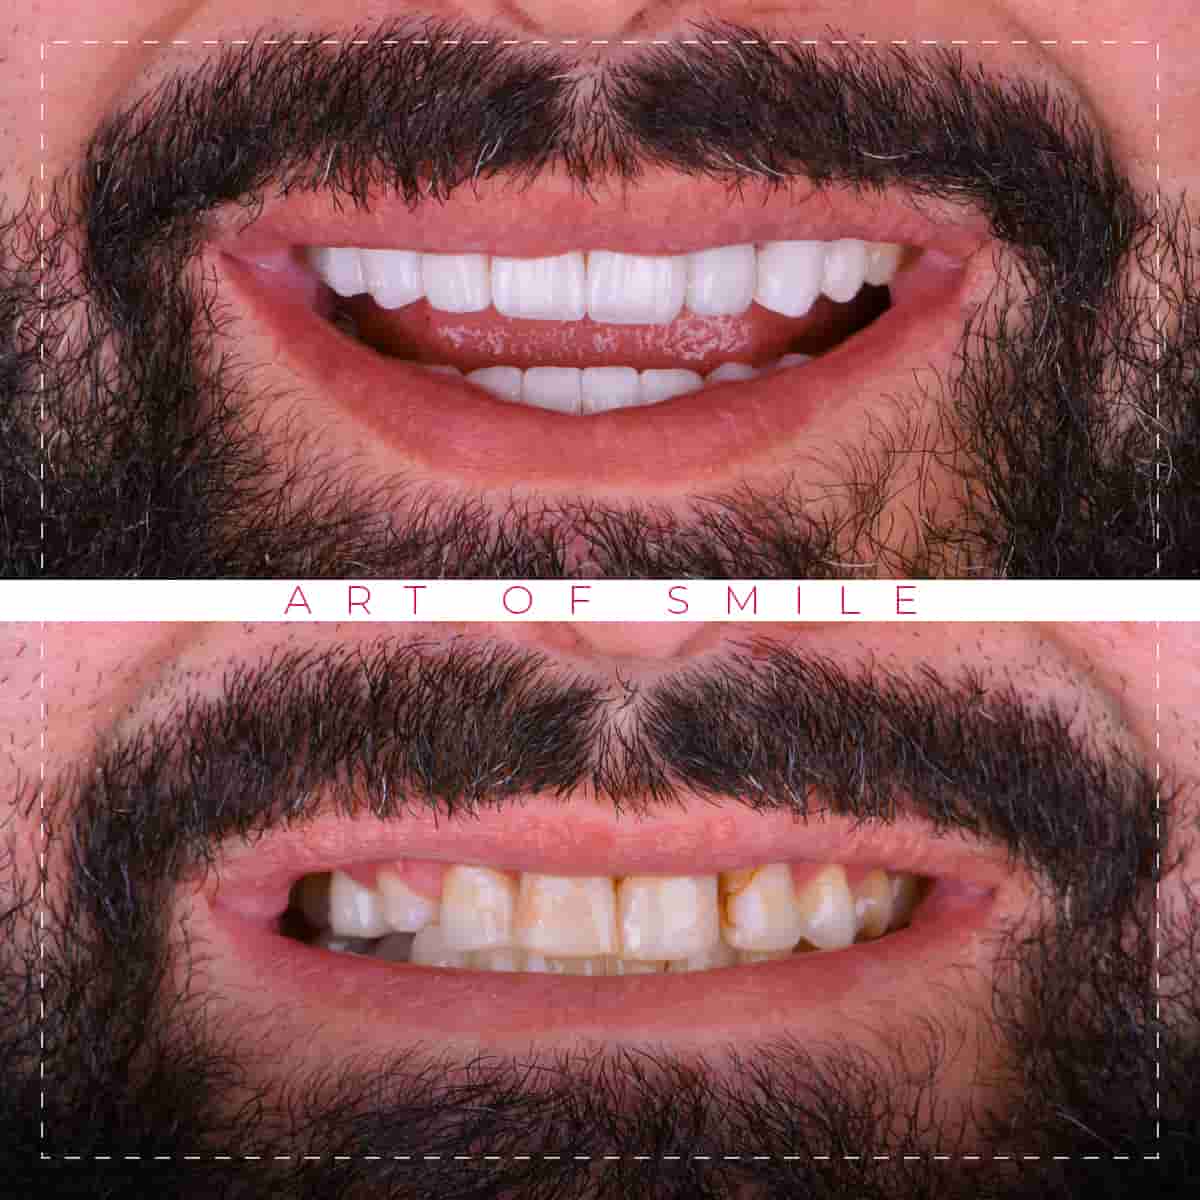 تجميل الاسنان قبل وبعد, تنظيف الاسنان, ابتسامة هوليود, زراعة اسنان